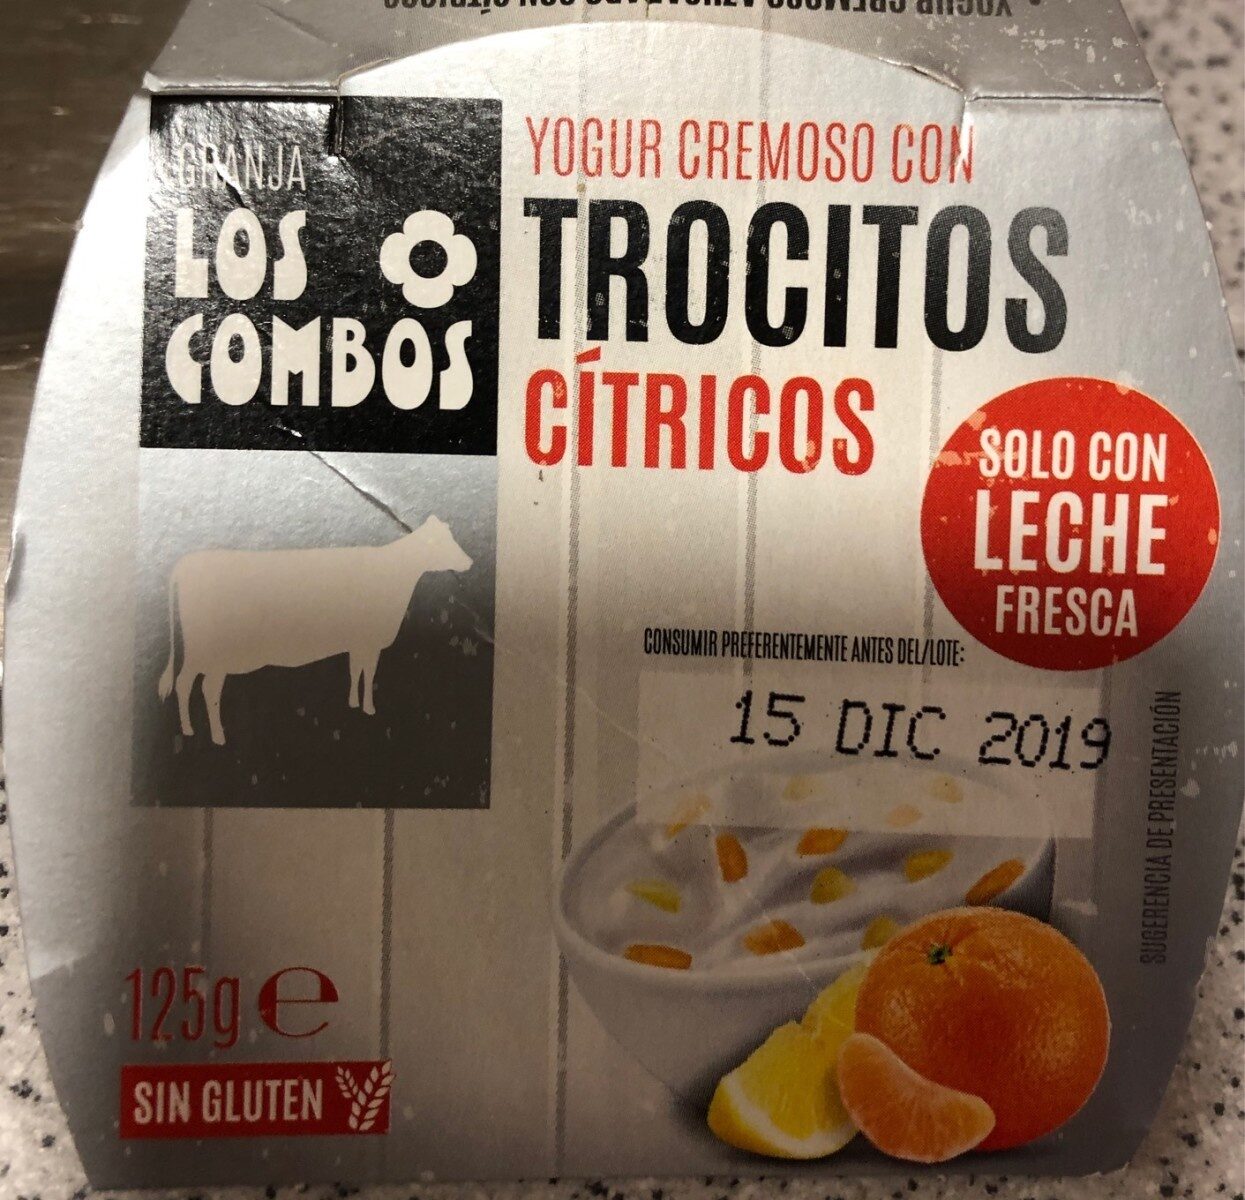 Yogur cremoso con trocitos cítricos - Producte - es